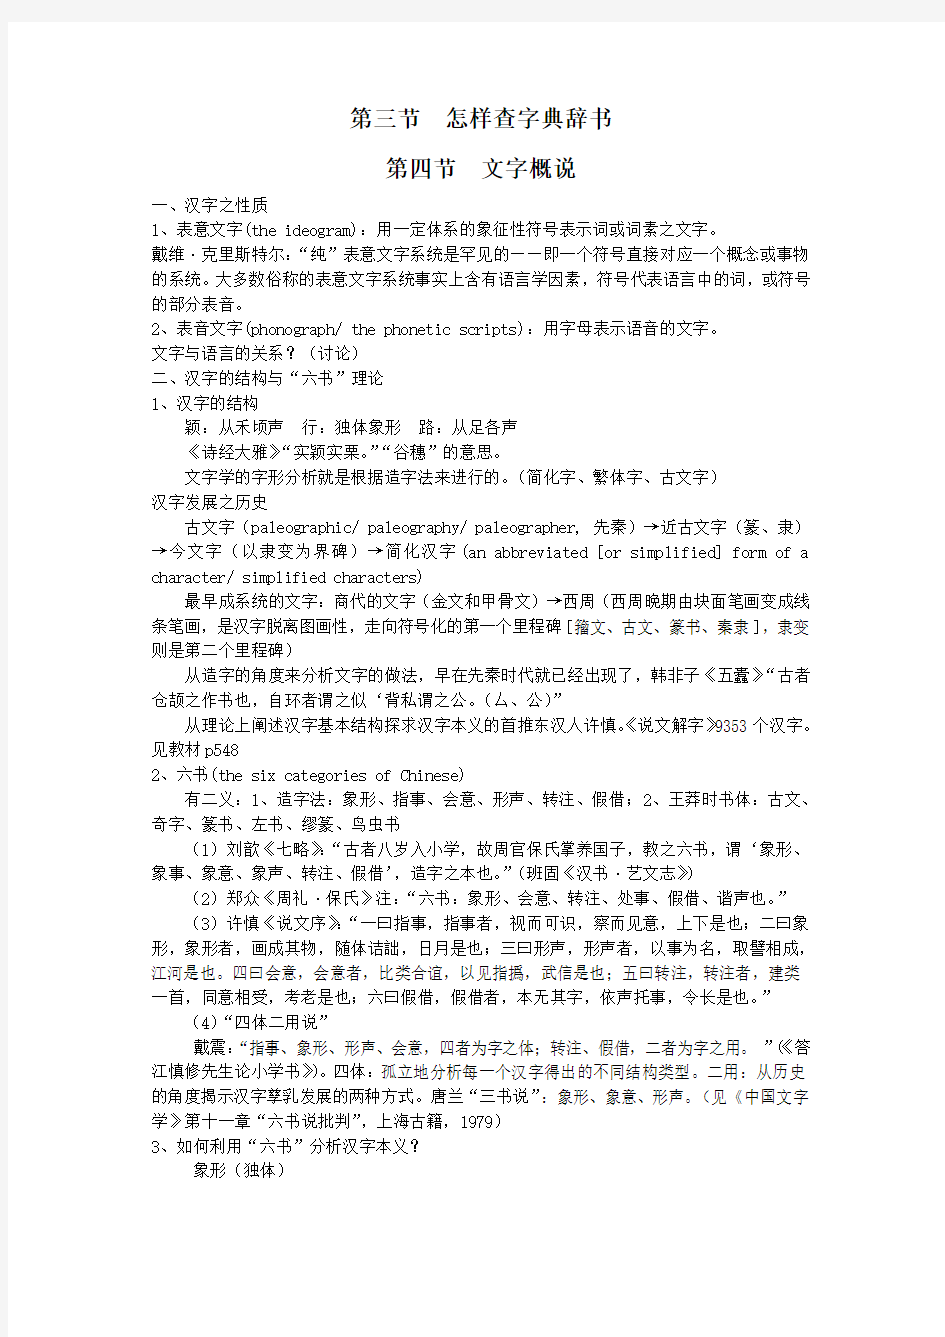 古代汉语讲义(11页)